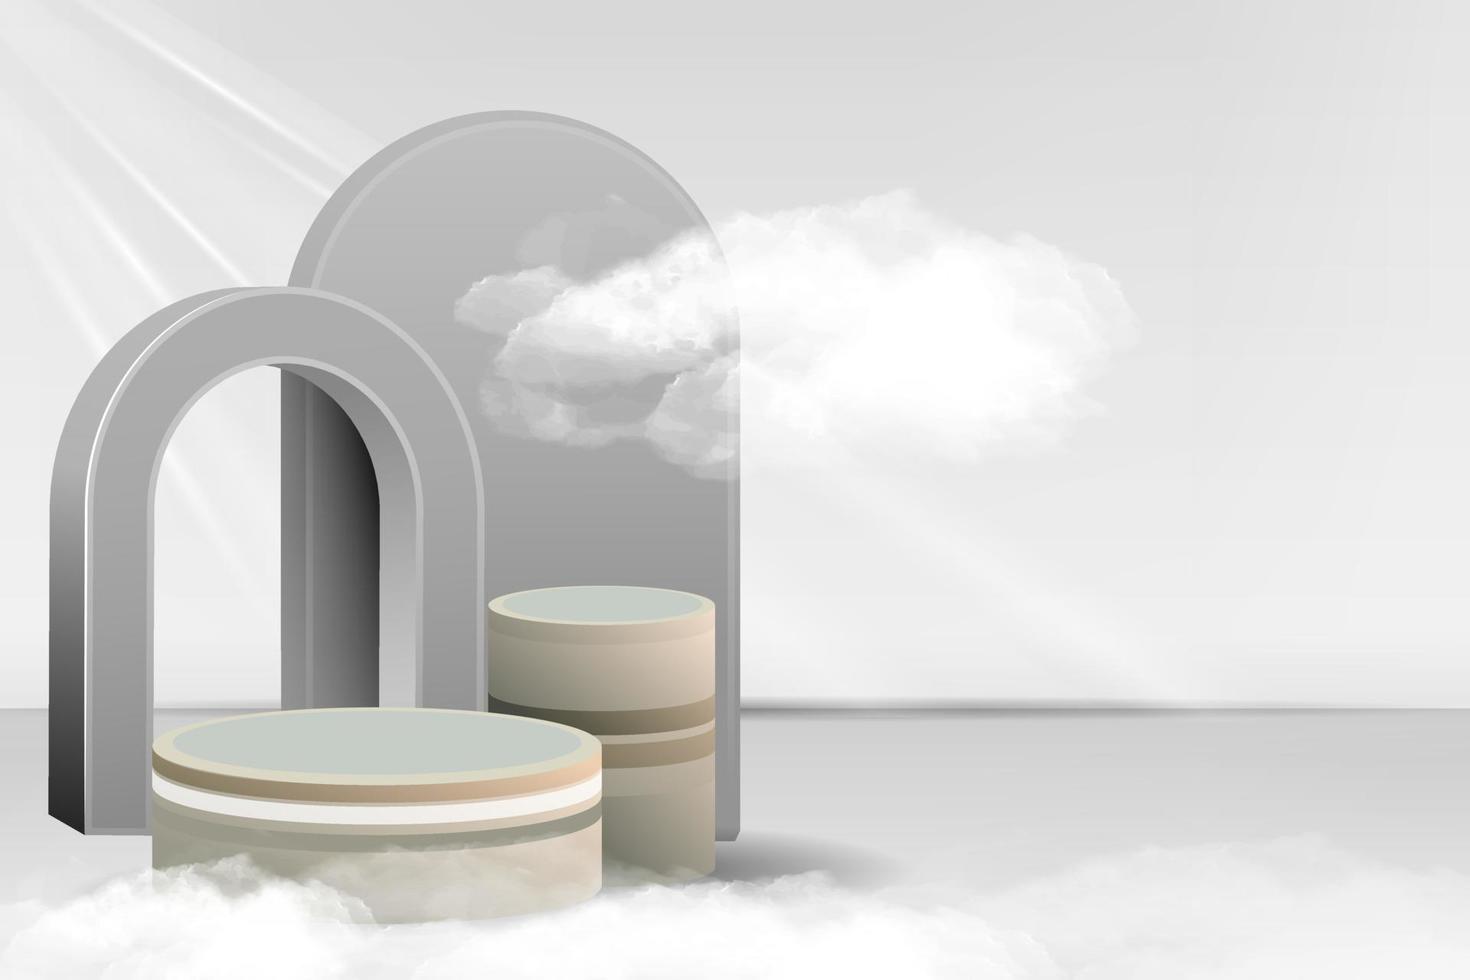 3d podium skede rum med realistisk cylinder piedestal geometri form fyrkant gjutning med skugga moln bakgrund. kosmetisk bakgrund för produkt, branding och förpackning presentation vektor